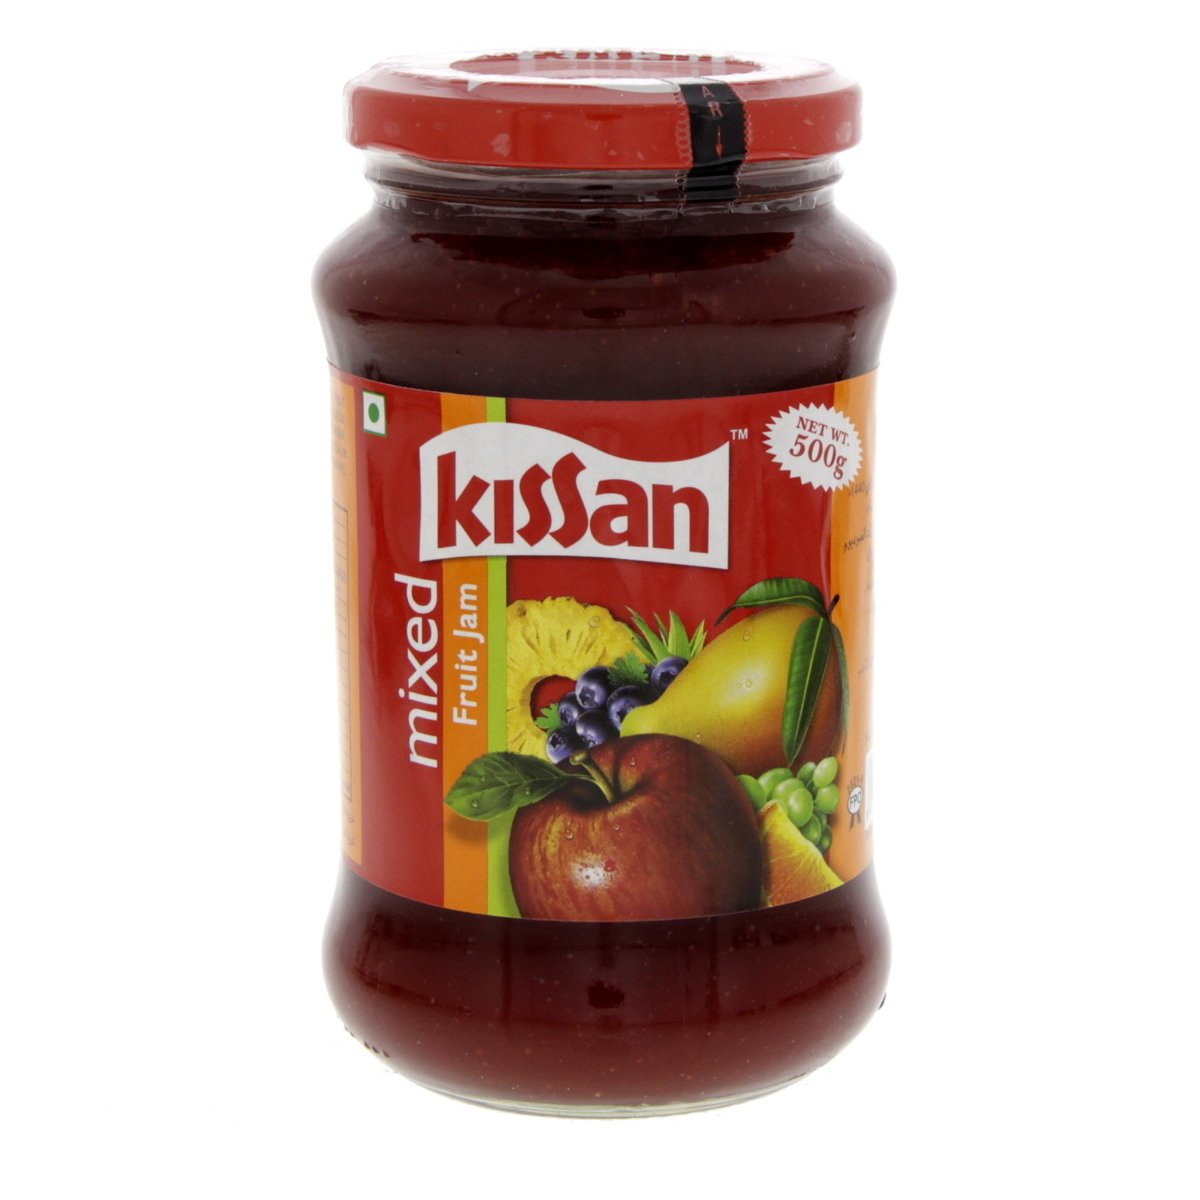 Kissan Mixed Fruit Jam 500g